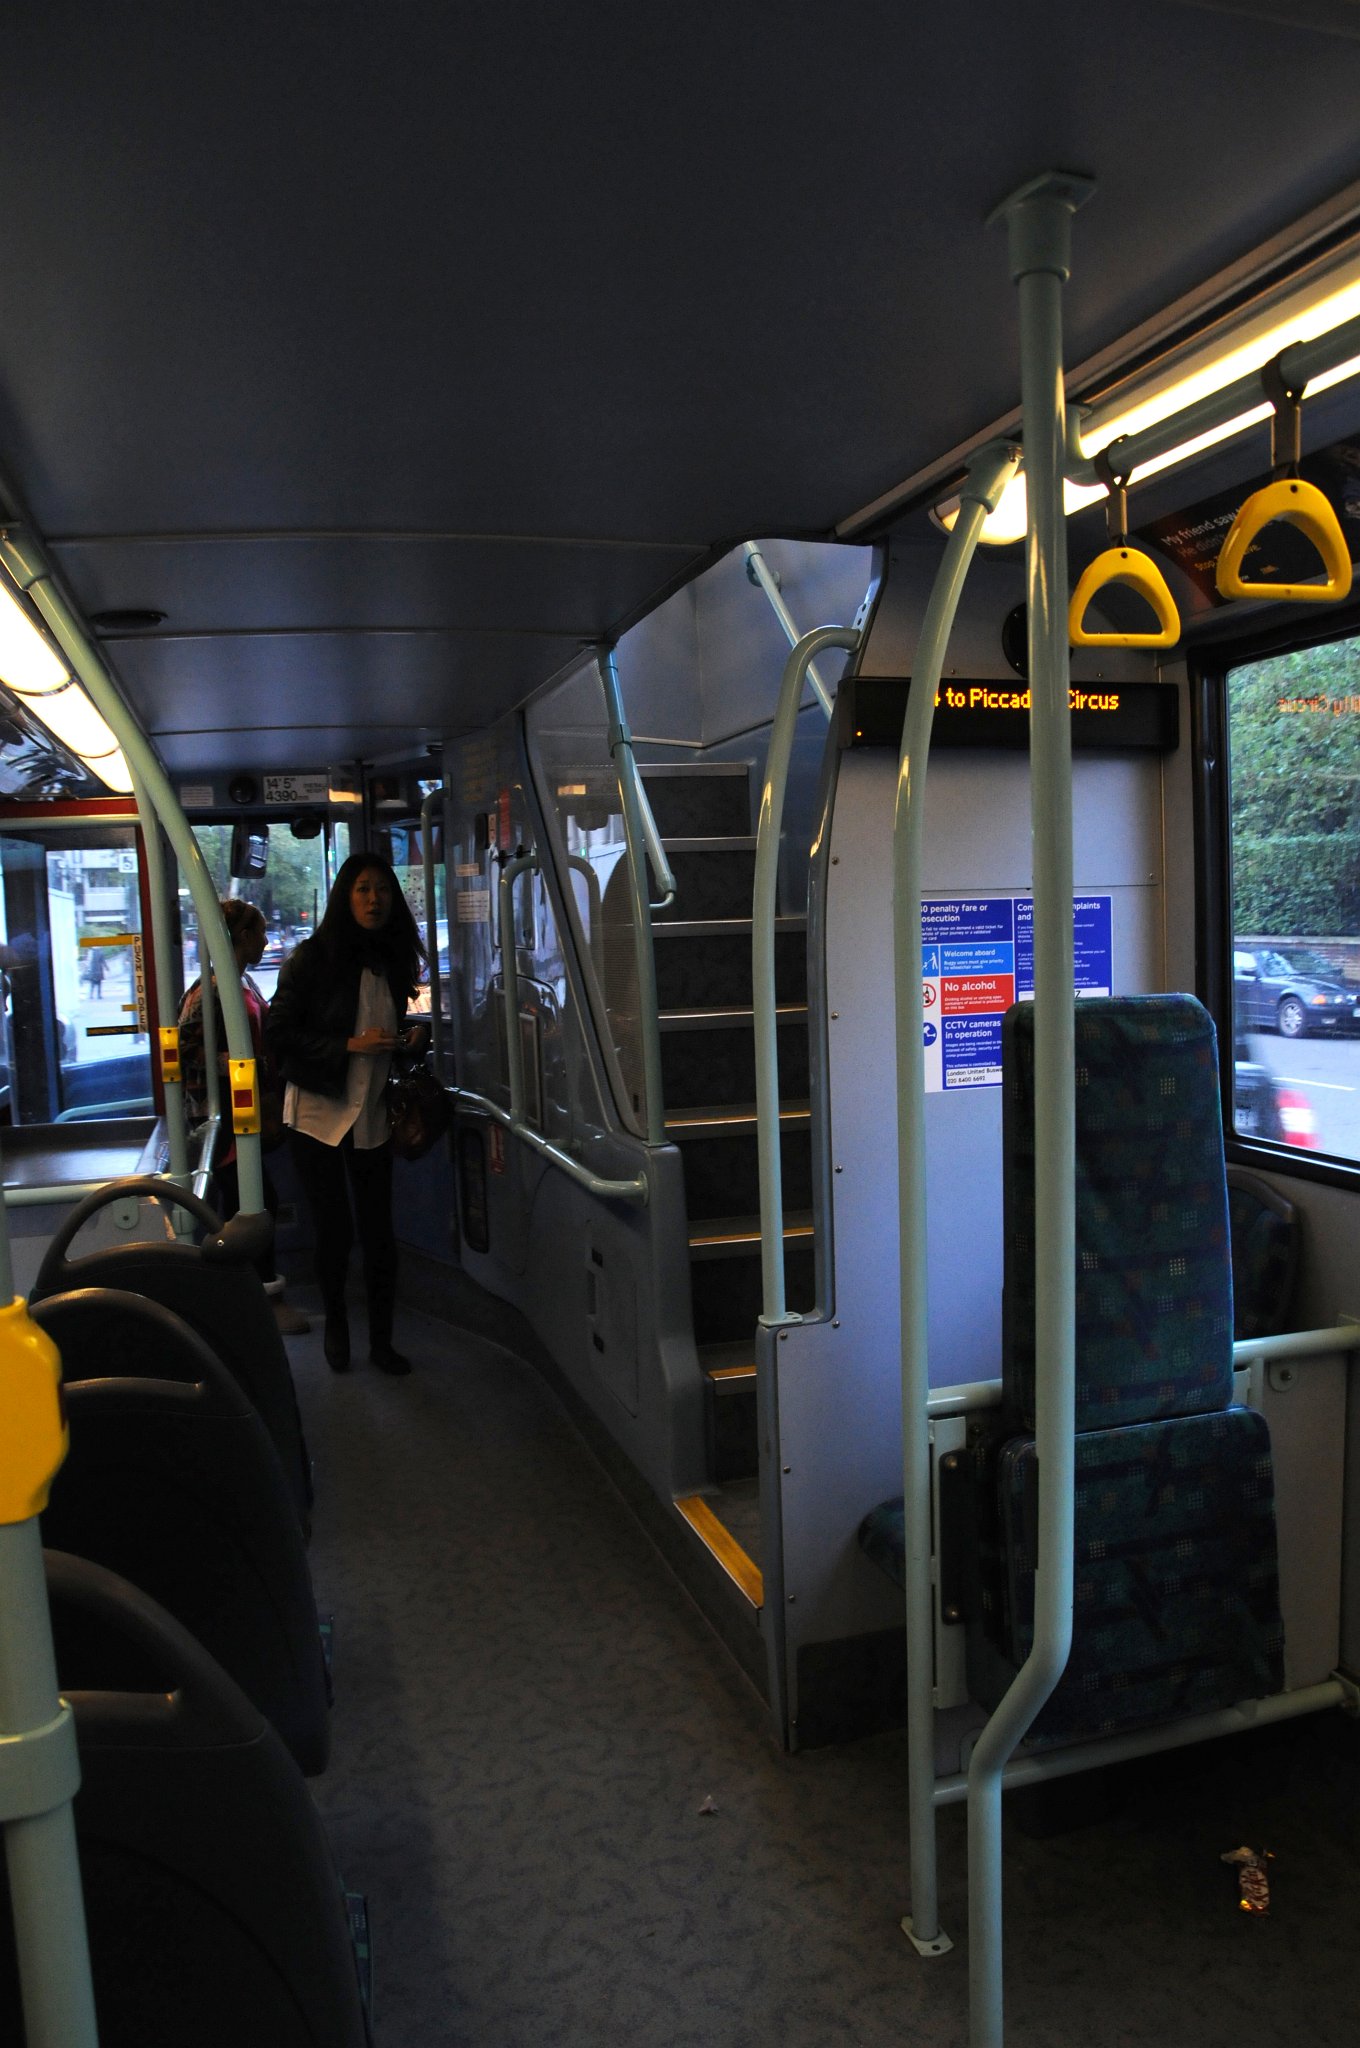 DSC_6238_1.jpg - Původně používané poschoďové autobusy s širokým nástupním prostorem – doubledeckery jsou již vyřazeny z provozu (poslední pravidelná linka 9. prosince 2005). Důvodem je jejich stáří (první autobus tohoto typu měl v roce 2004 již 50 let), nevhodnost pro dopravu vozíčkářů a rodičů s kočárky a potřebu dvoumužné obsluhy. Tyto autobusy jsou od konce roku 2005 používány pouze na dvou linkách, jako připomínka londýnských tradičních autobusů.